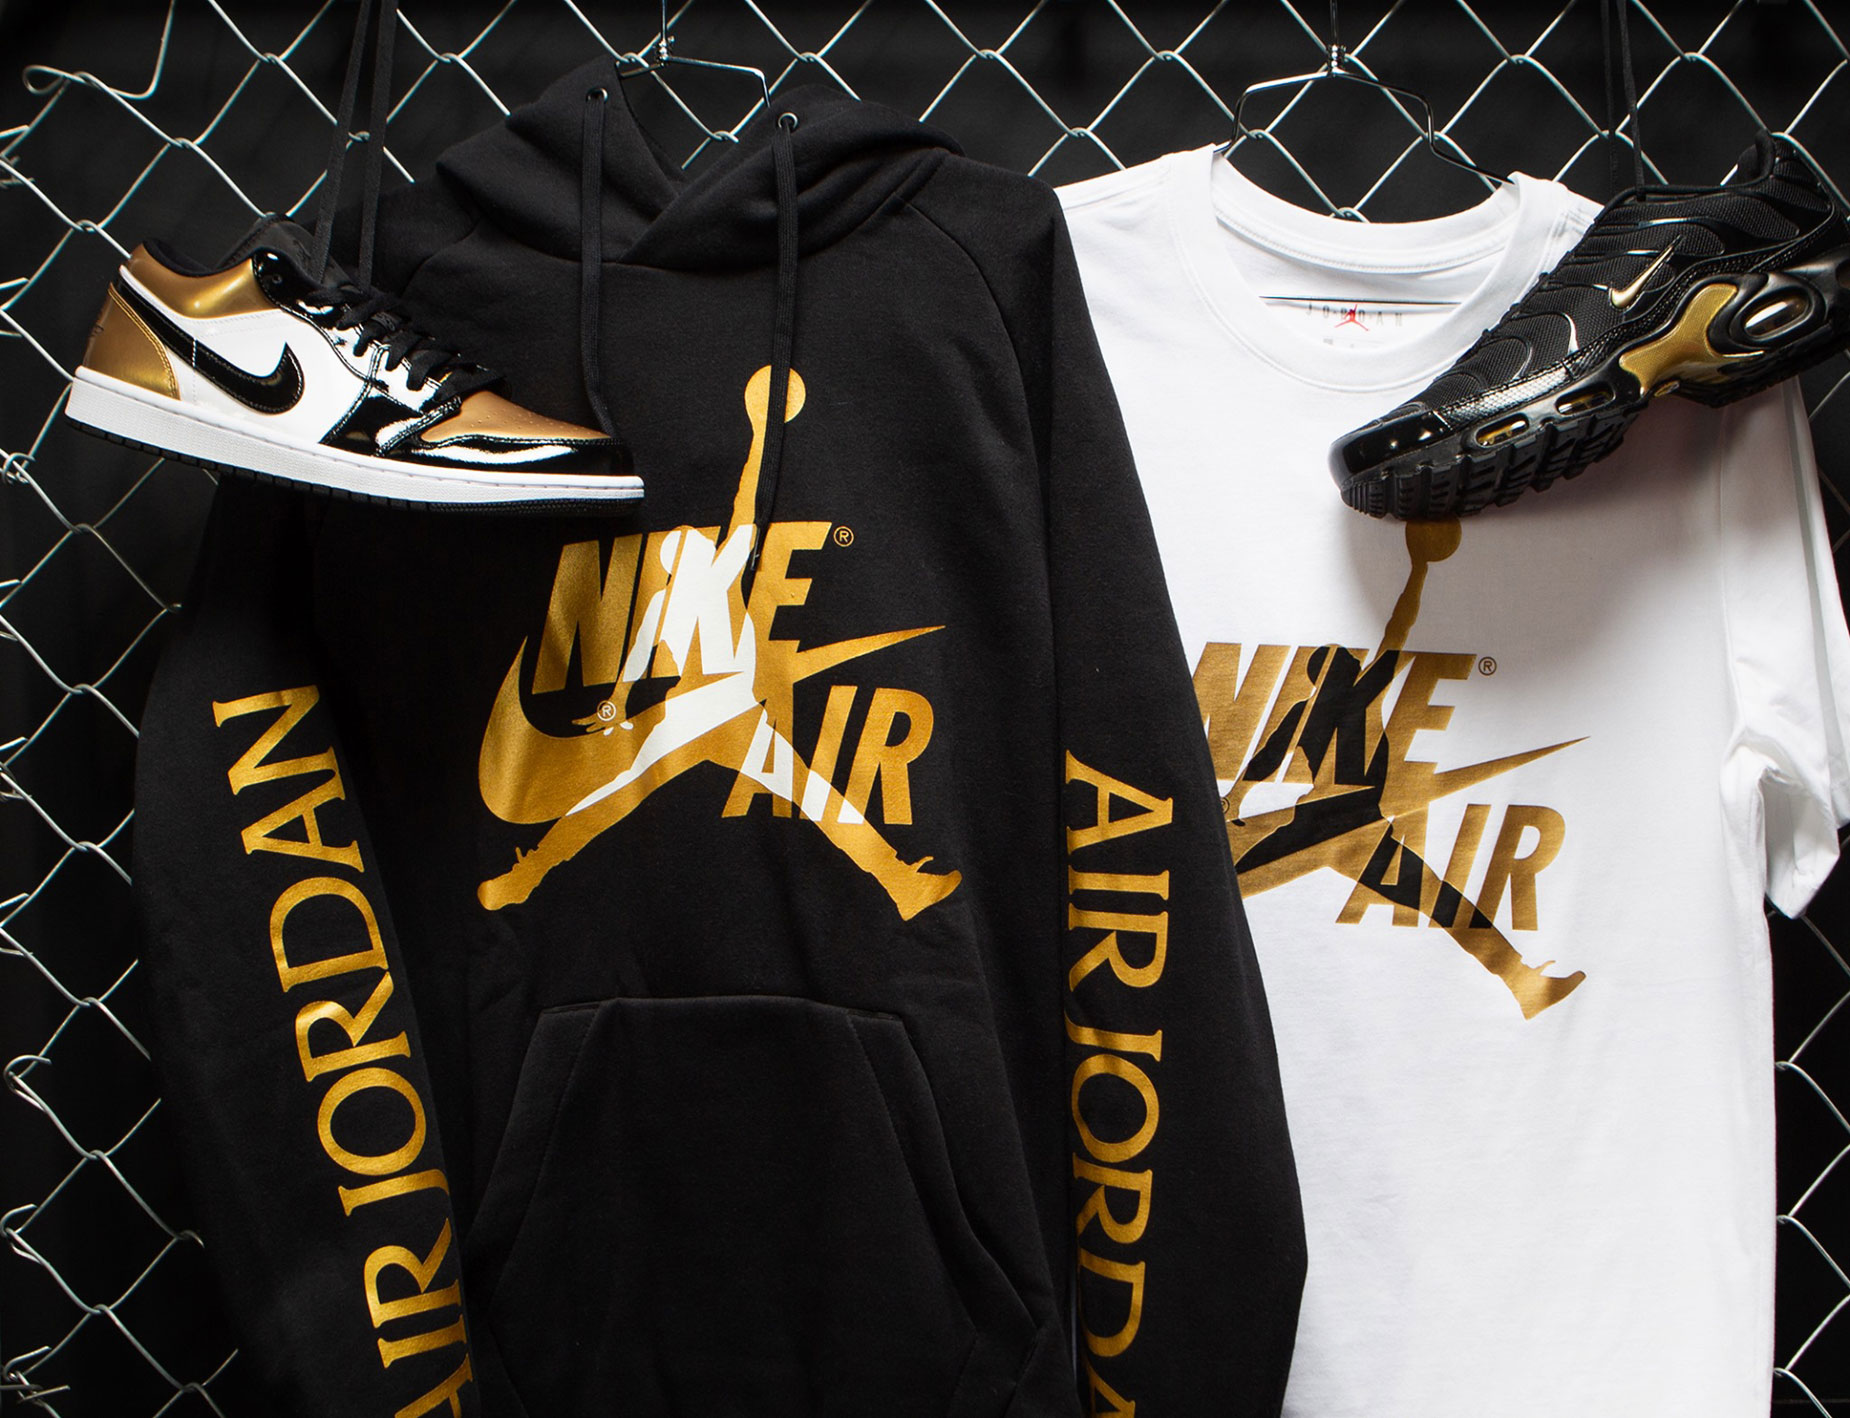 Jordan x Nike Metallic Gold Smash Up 